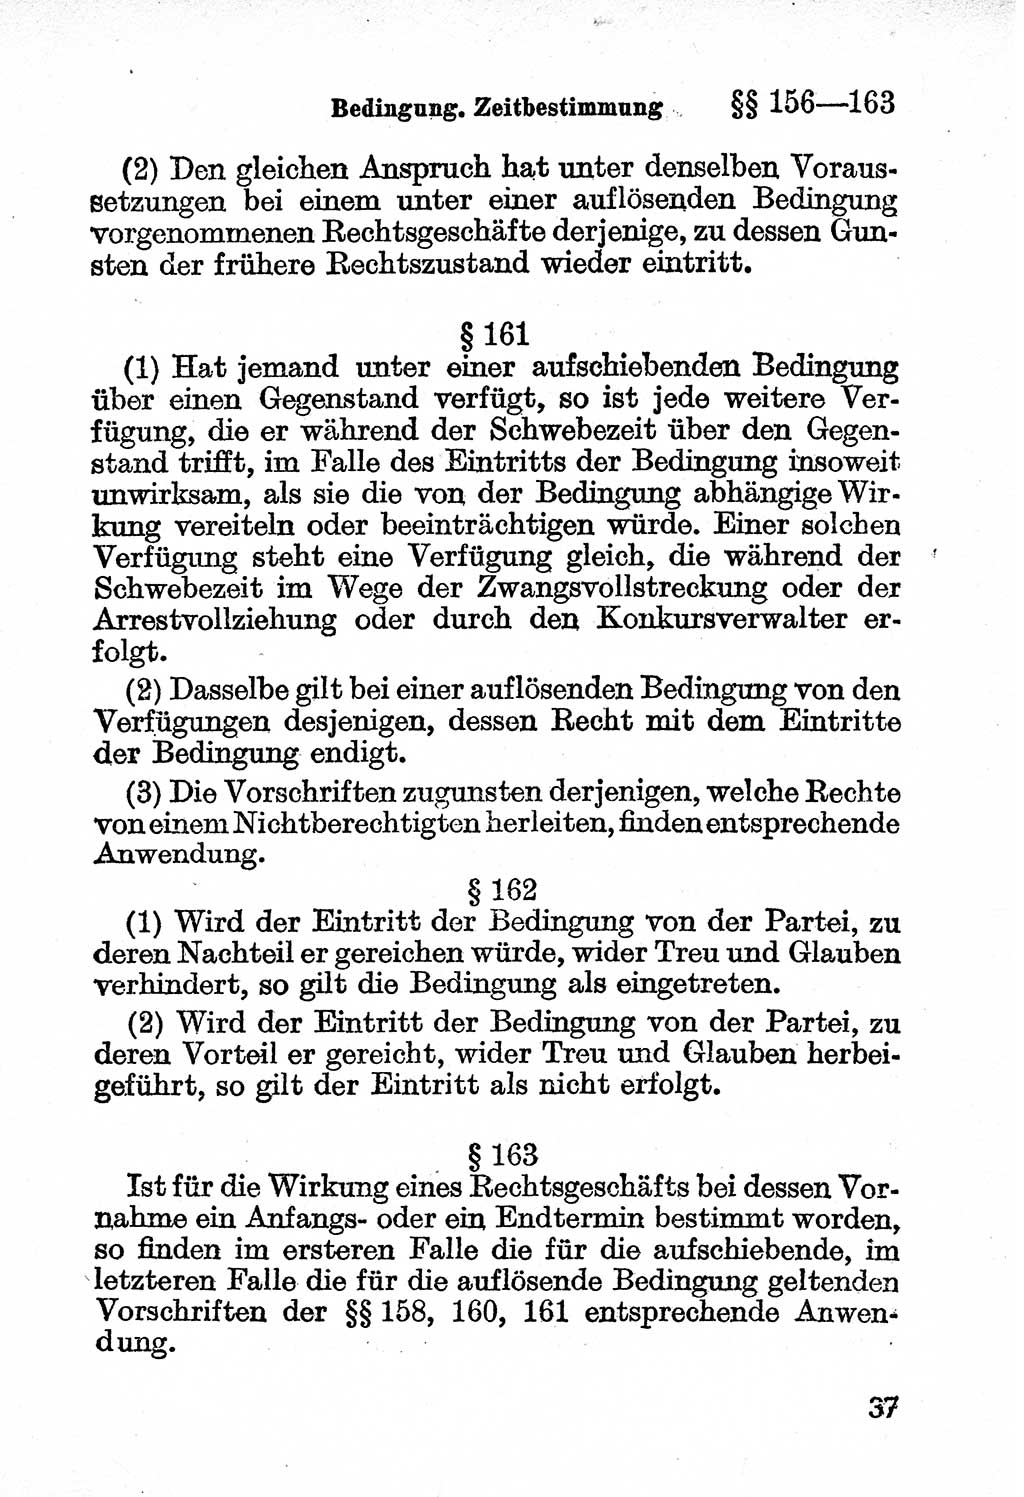 Bürgerliches Gesetzbuch (BGB) nebst wichtigen Nebengesetzen [Deutsche Demokratische Republik (DDR)] 1956, Seite 37 (BGB Nebenges. DDR 1956, S. 37)